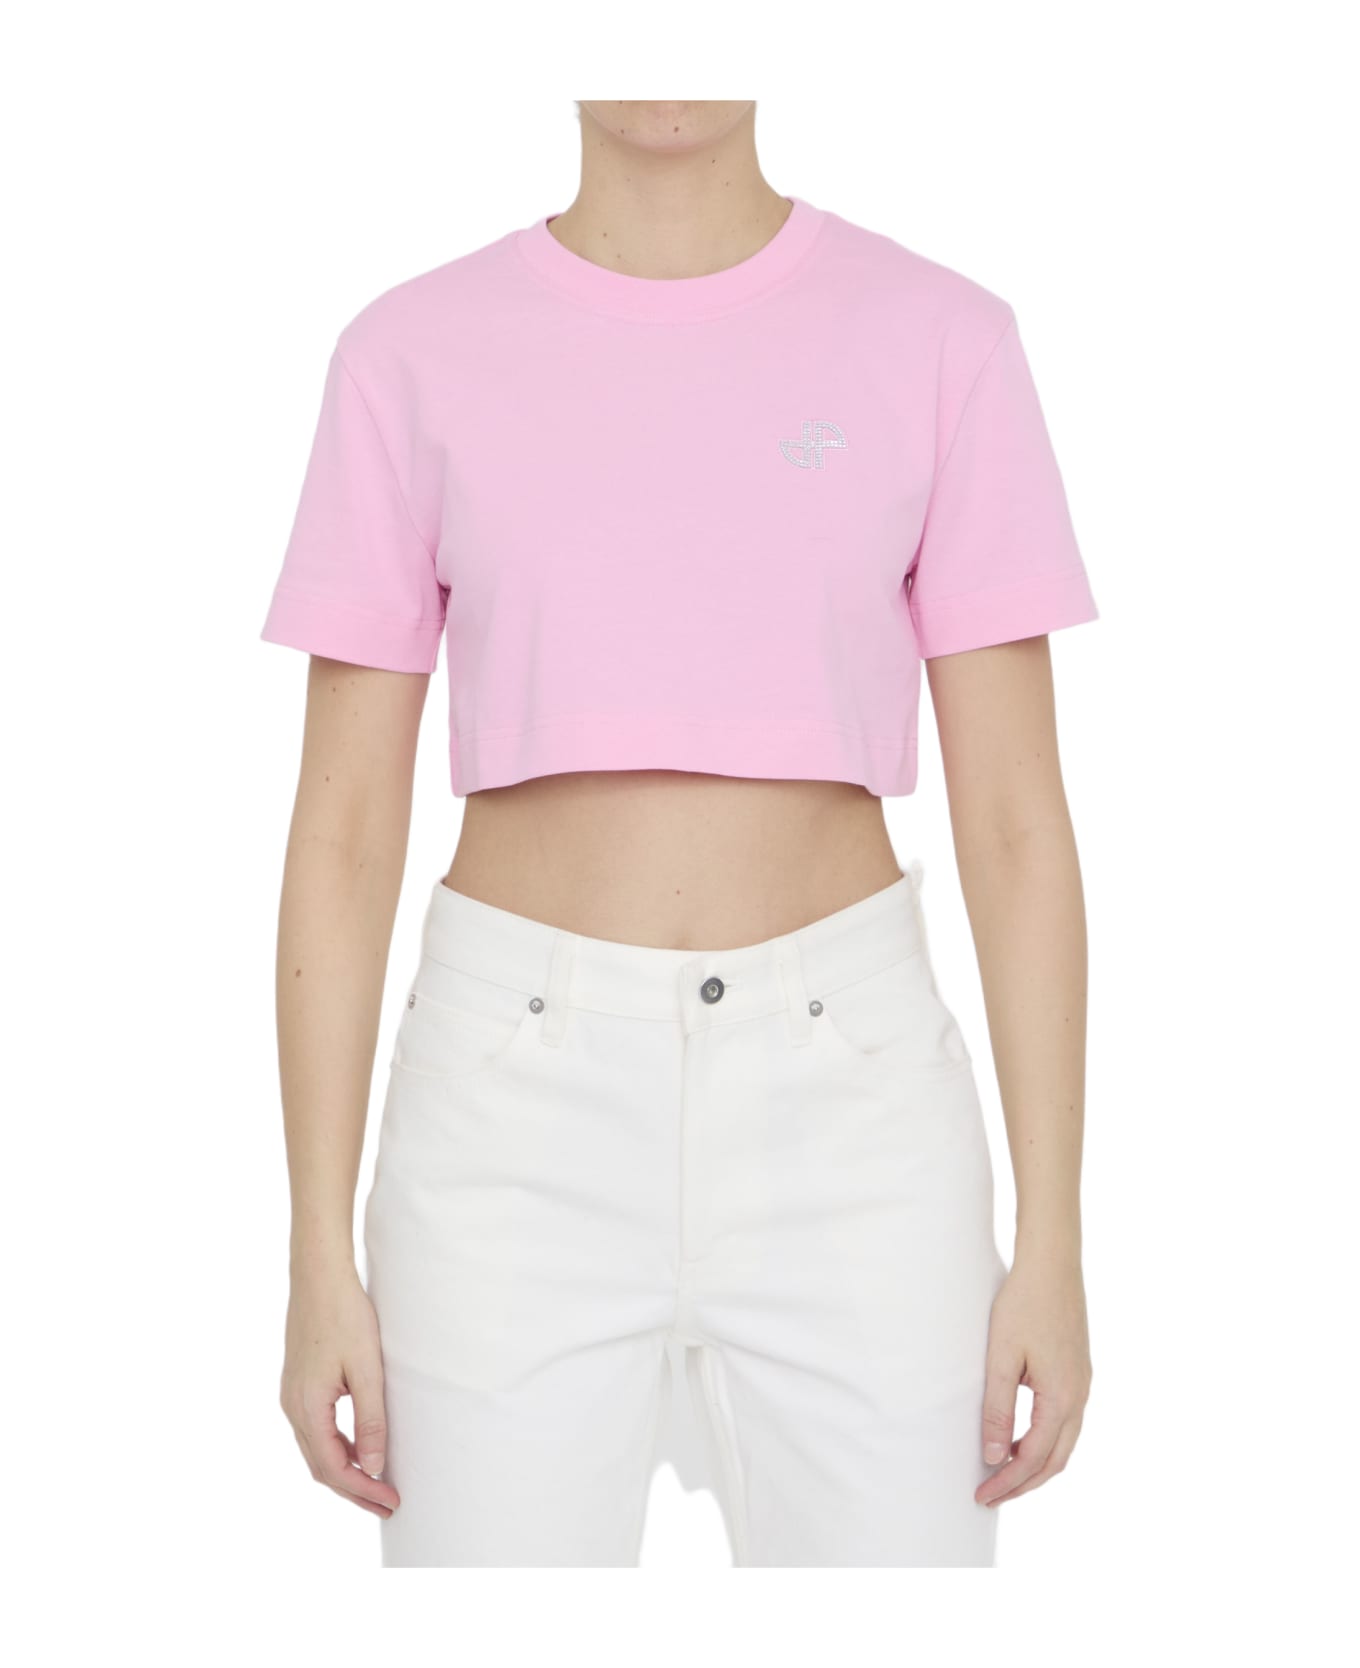 Patou Cropped T-shirt - P Pink Tシャツ